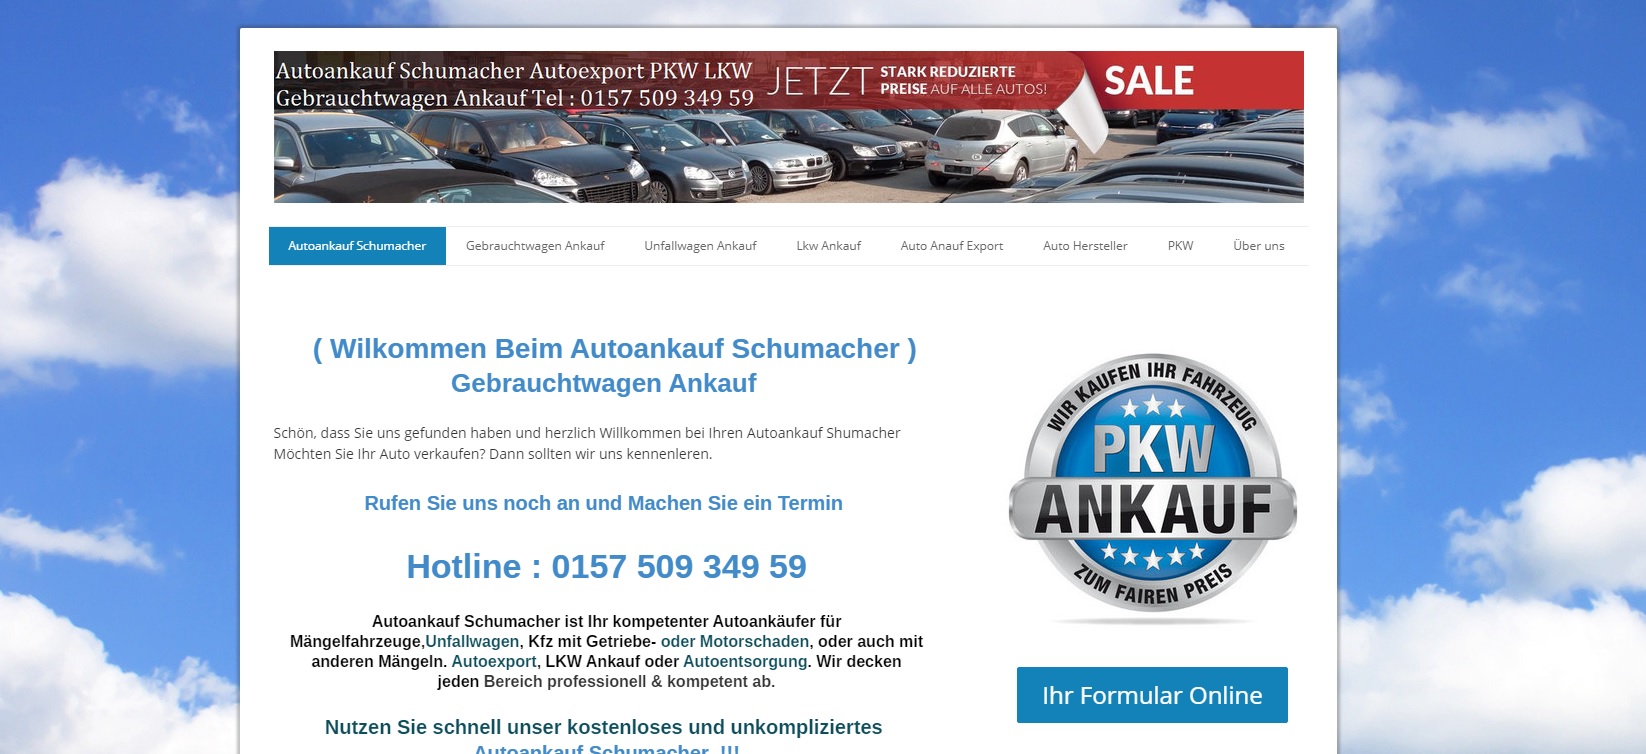 autoankauf leipzig wir kaufen jedes unfall auto - Autoankauf Leipzig : Wir kaufen jedes Unfall Auto